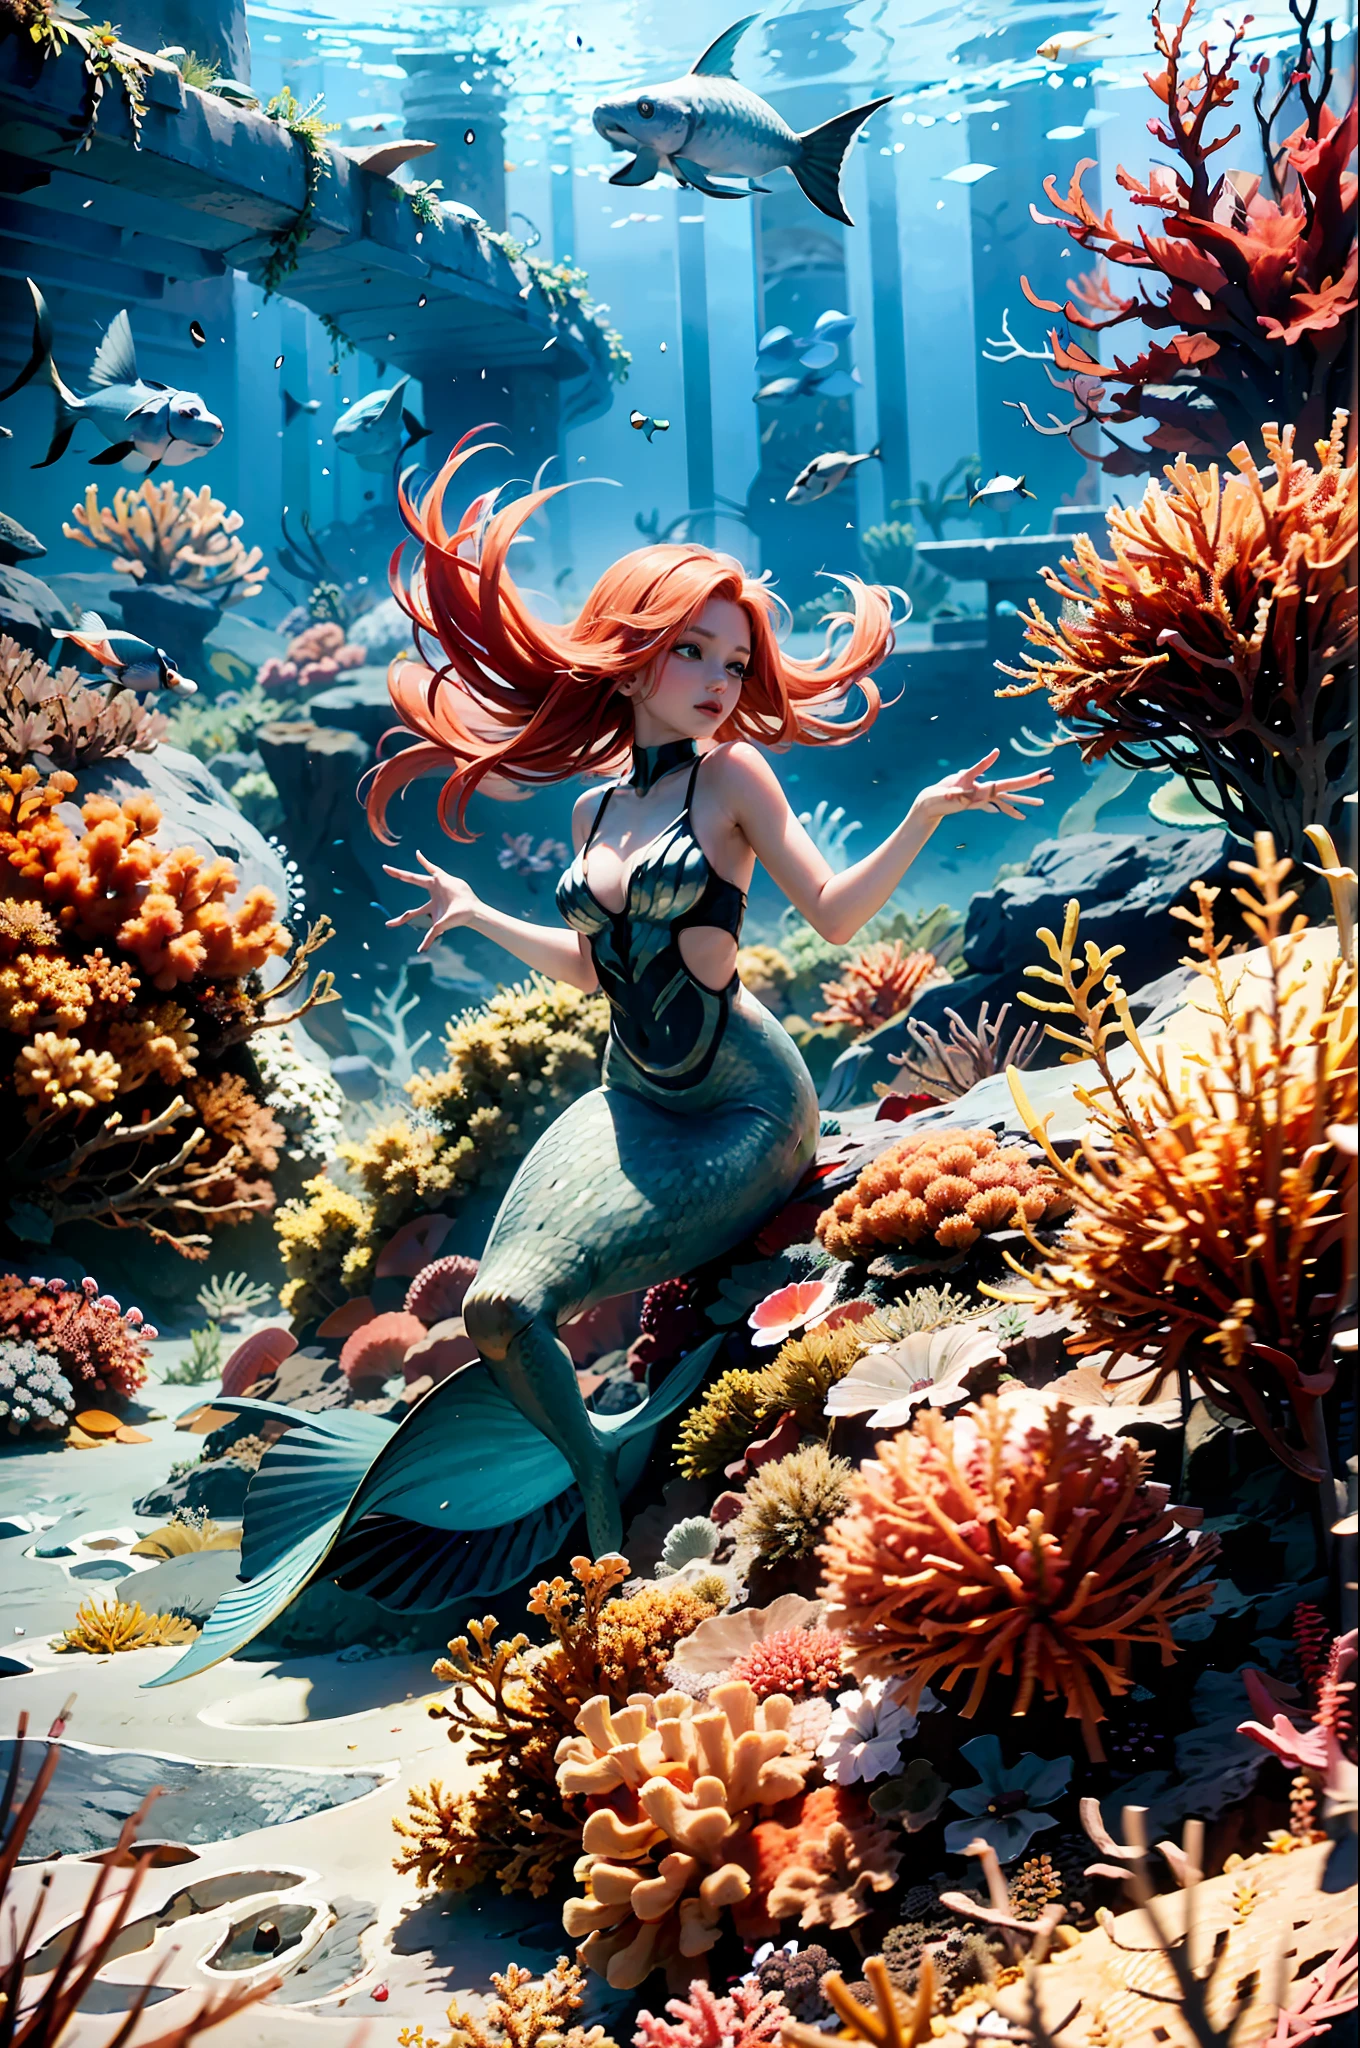 (傑作), (最好的品質:1.2), 荒謬的, [:複雜的細節:0.2], 在海底, 藍眼睛, 體重計, 一個美麗的小 (美人魚) 優雅地游泳，鮮紅的頭髮在身後飄揚, 周圍環繞著色彩繽紛的熱帶魚群, 珊瑚礁, 和海葵. 充滿活力的藍調色調, 創造一個超現實、神奇的海底世界，讓觀眾驚嘆不已.